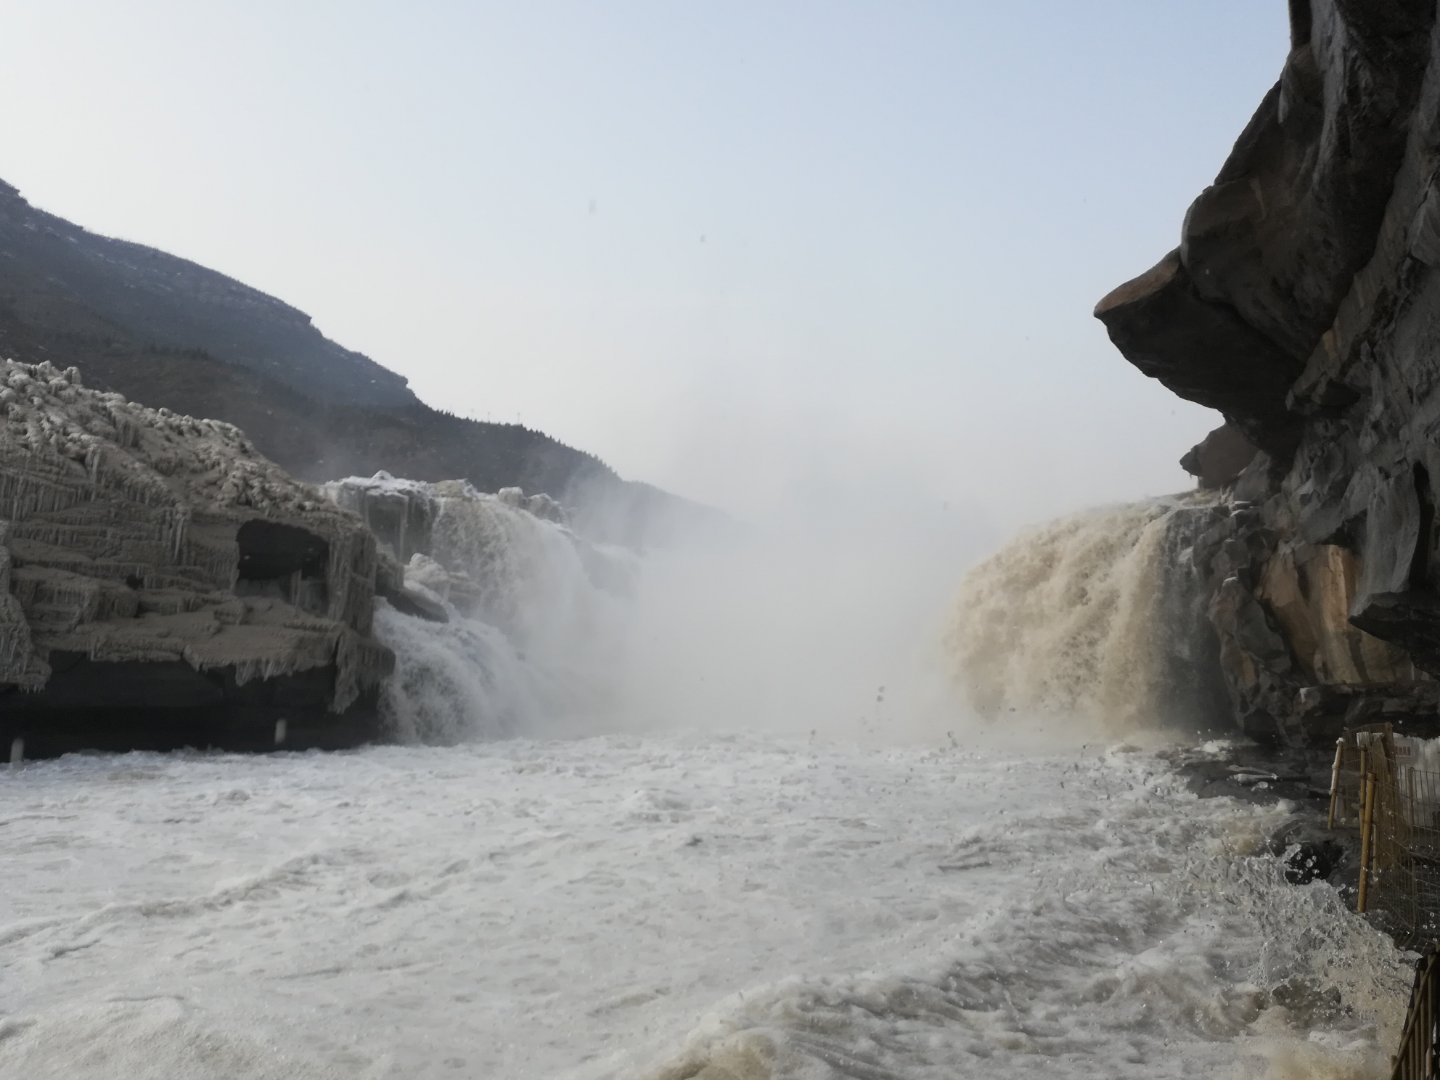 中国黄河壶口瀑布现冬季奇观十里龙槽浮满冰凌宛如巨龙 - 图说世界 - 龙腾网